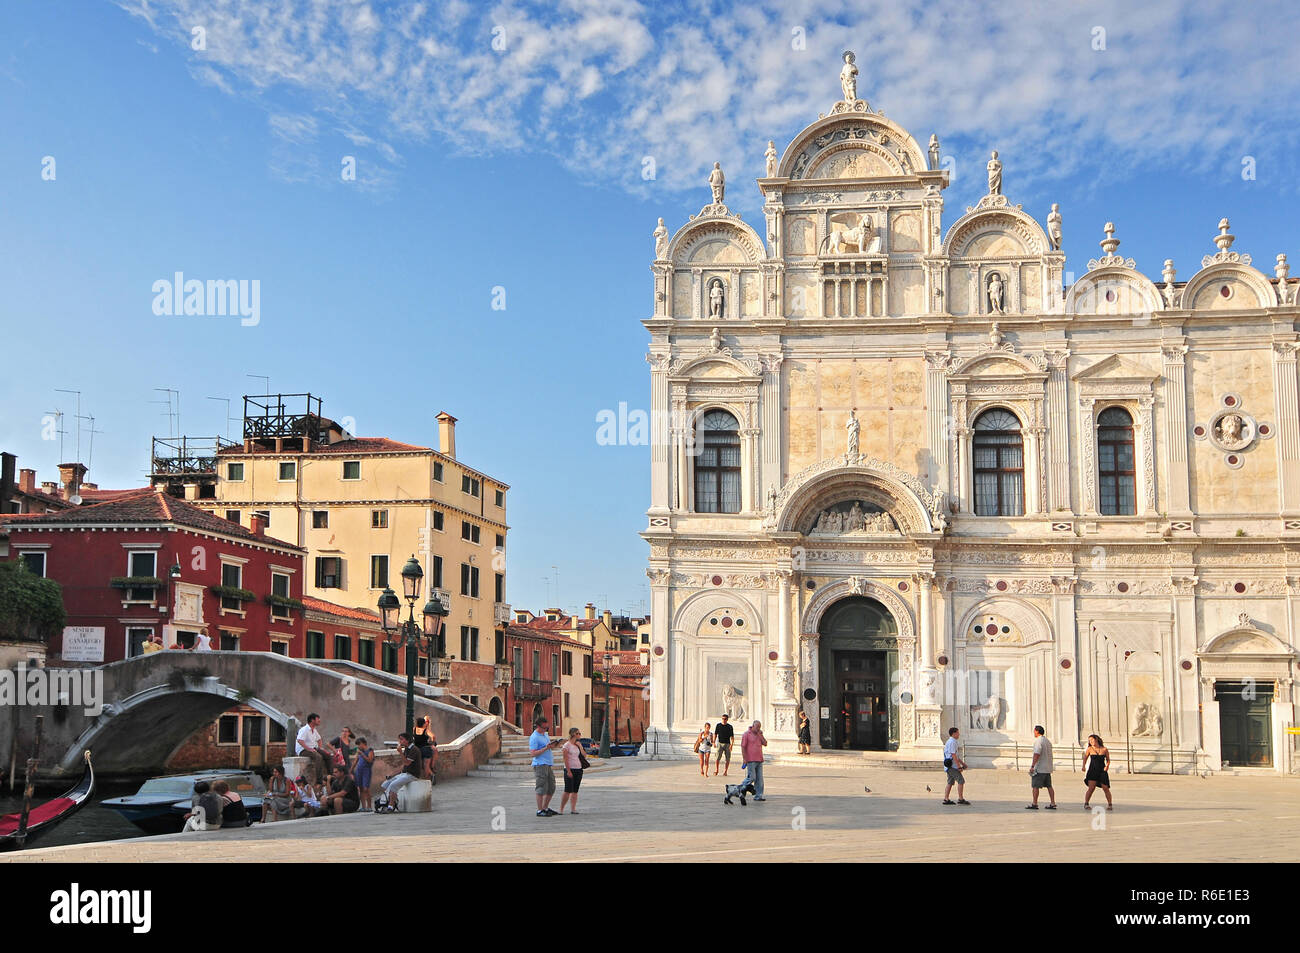 Vue de la Scuola Grande di San Marco à Venise à proximité de l'hôpital maintenant la Basilique Santi Giovanni e Paolo de Venise Italie Banque D'Images